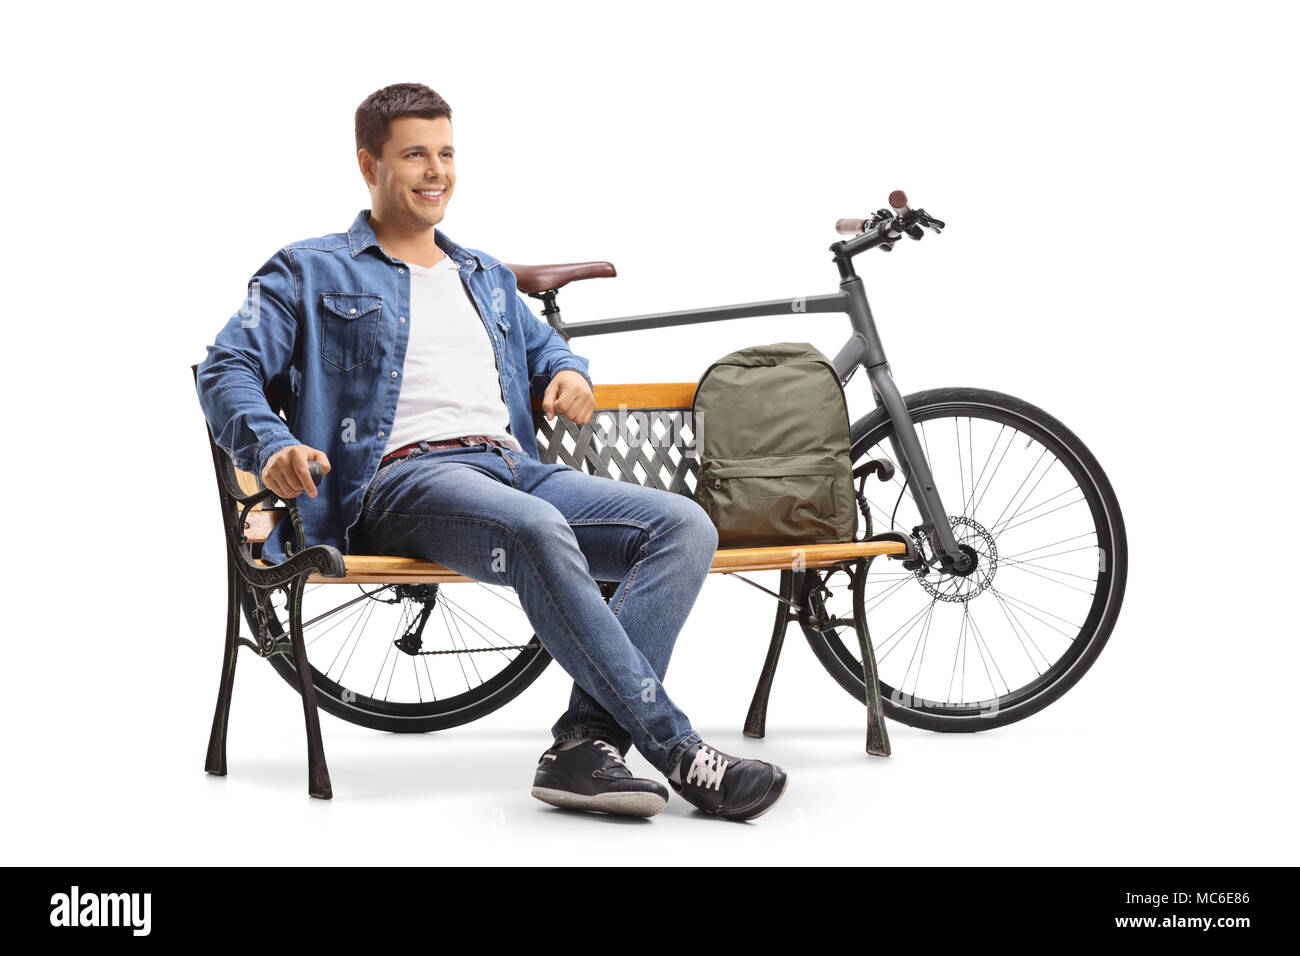 Jeune homme avec un vélo et un sac à dos, assis sur un banc isolé sur fond blanc Banque D'Images